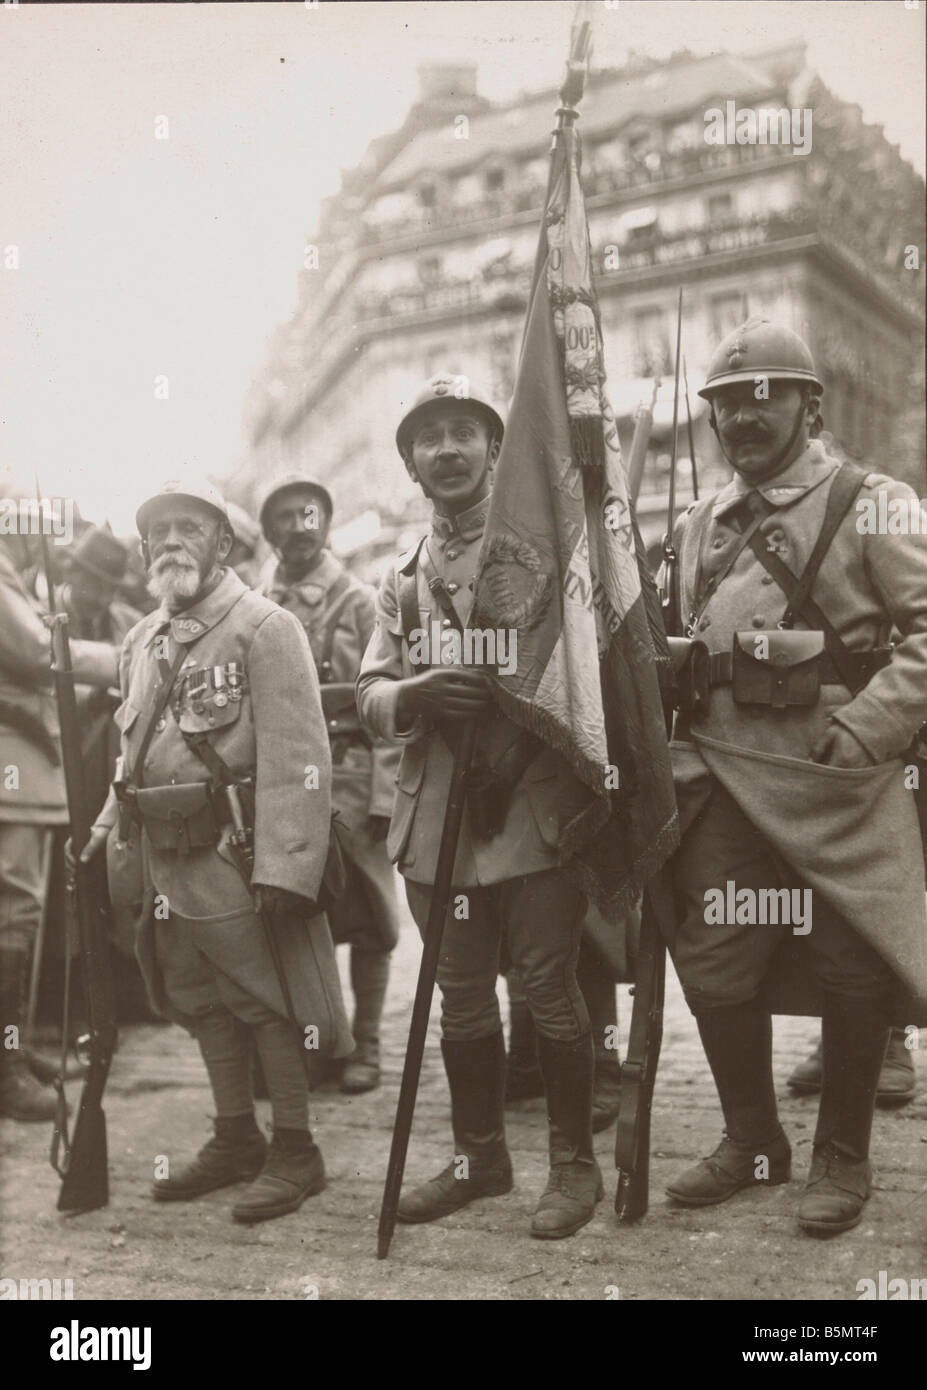 9FK 1919 7 14 A1 20 Vittoria cel Paris 14 7 1919 bandiere Paris 14 luglio 1919 la vittoria degli Alleati le celebrazioni per la fine della prima guerra mondiale di marzo Foto Stock